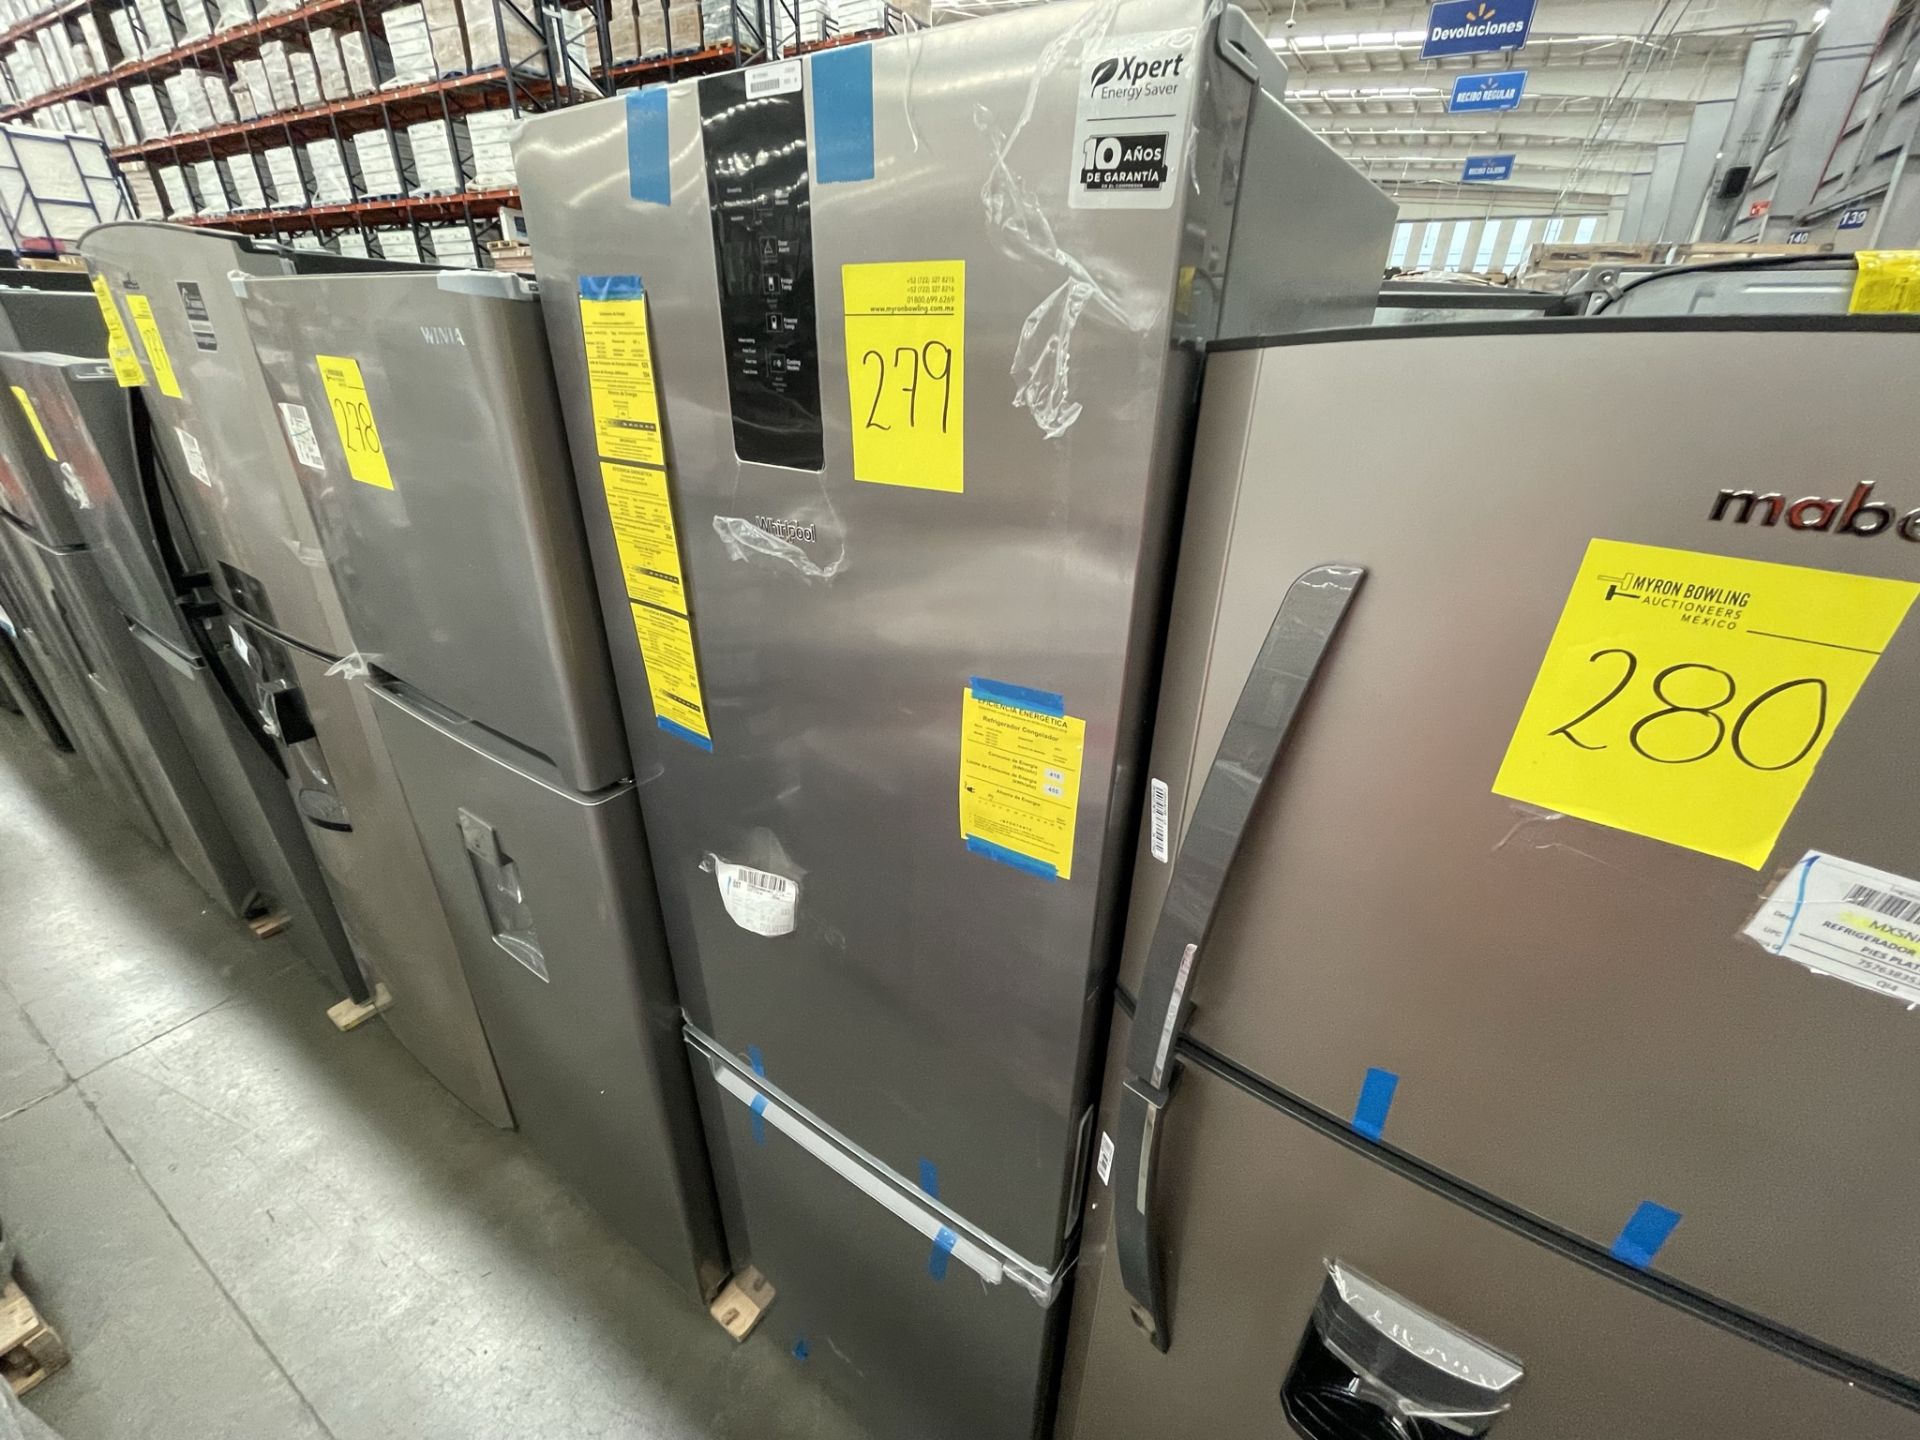 (EQUIPO NUEVO) 1 Refrigerador Marca WHIRPOOL, Modelo WB1332A, Serie WB1332A03, Color GRIS, LB-61189 - Image 7 of 8